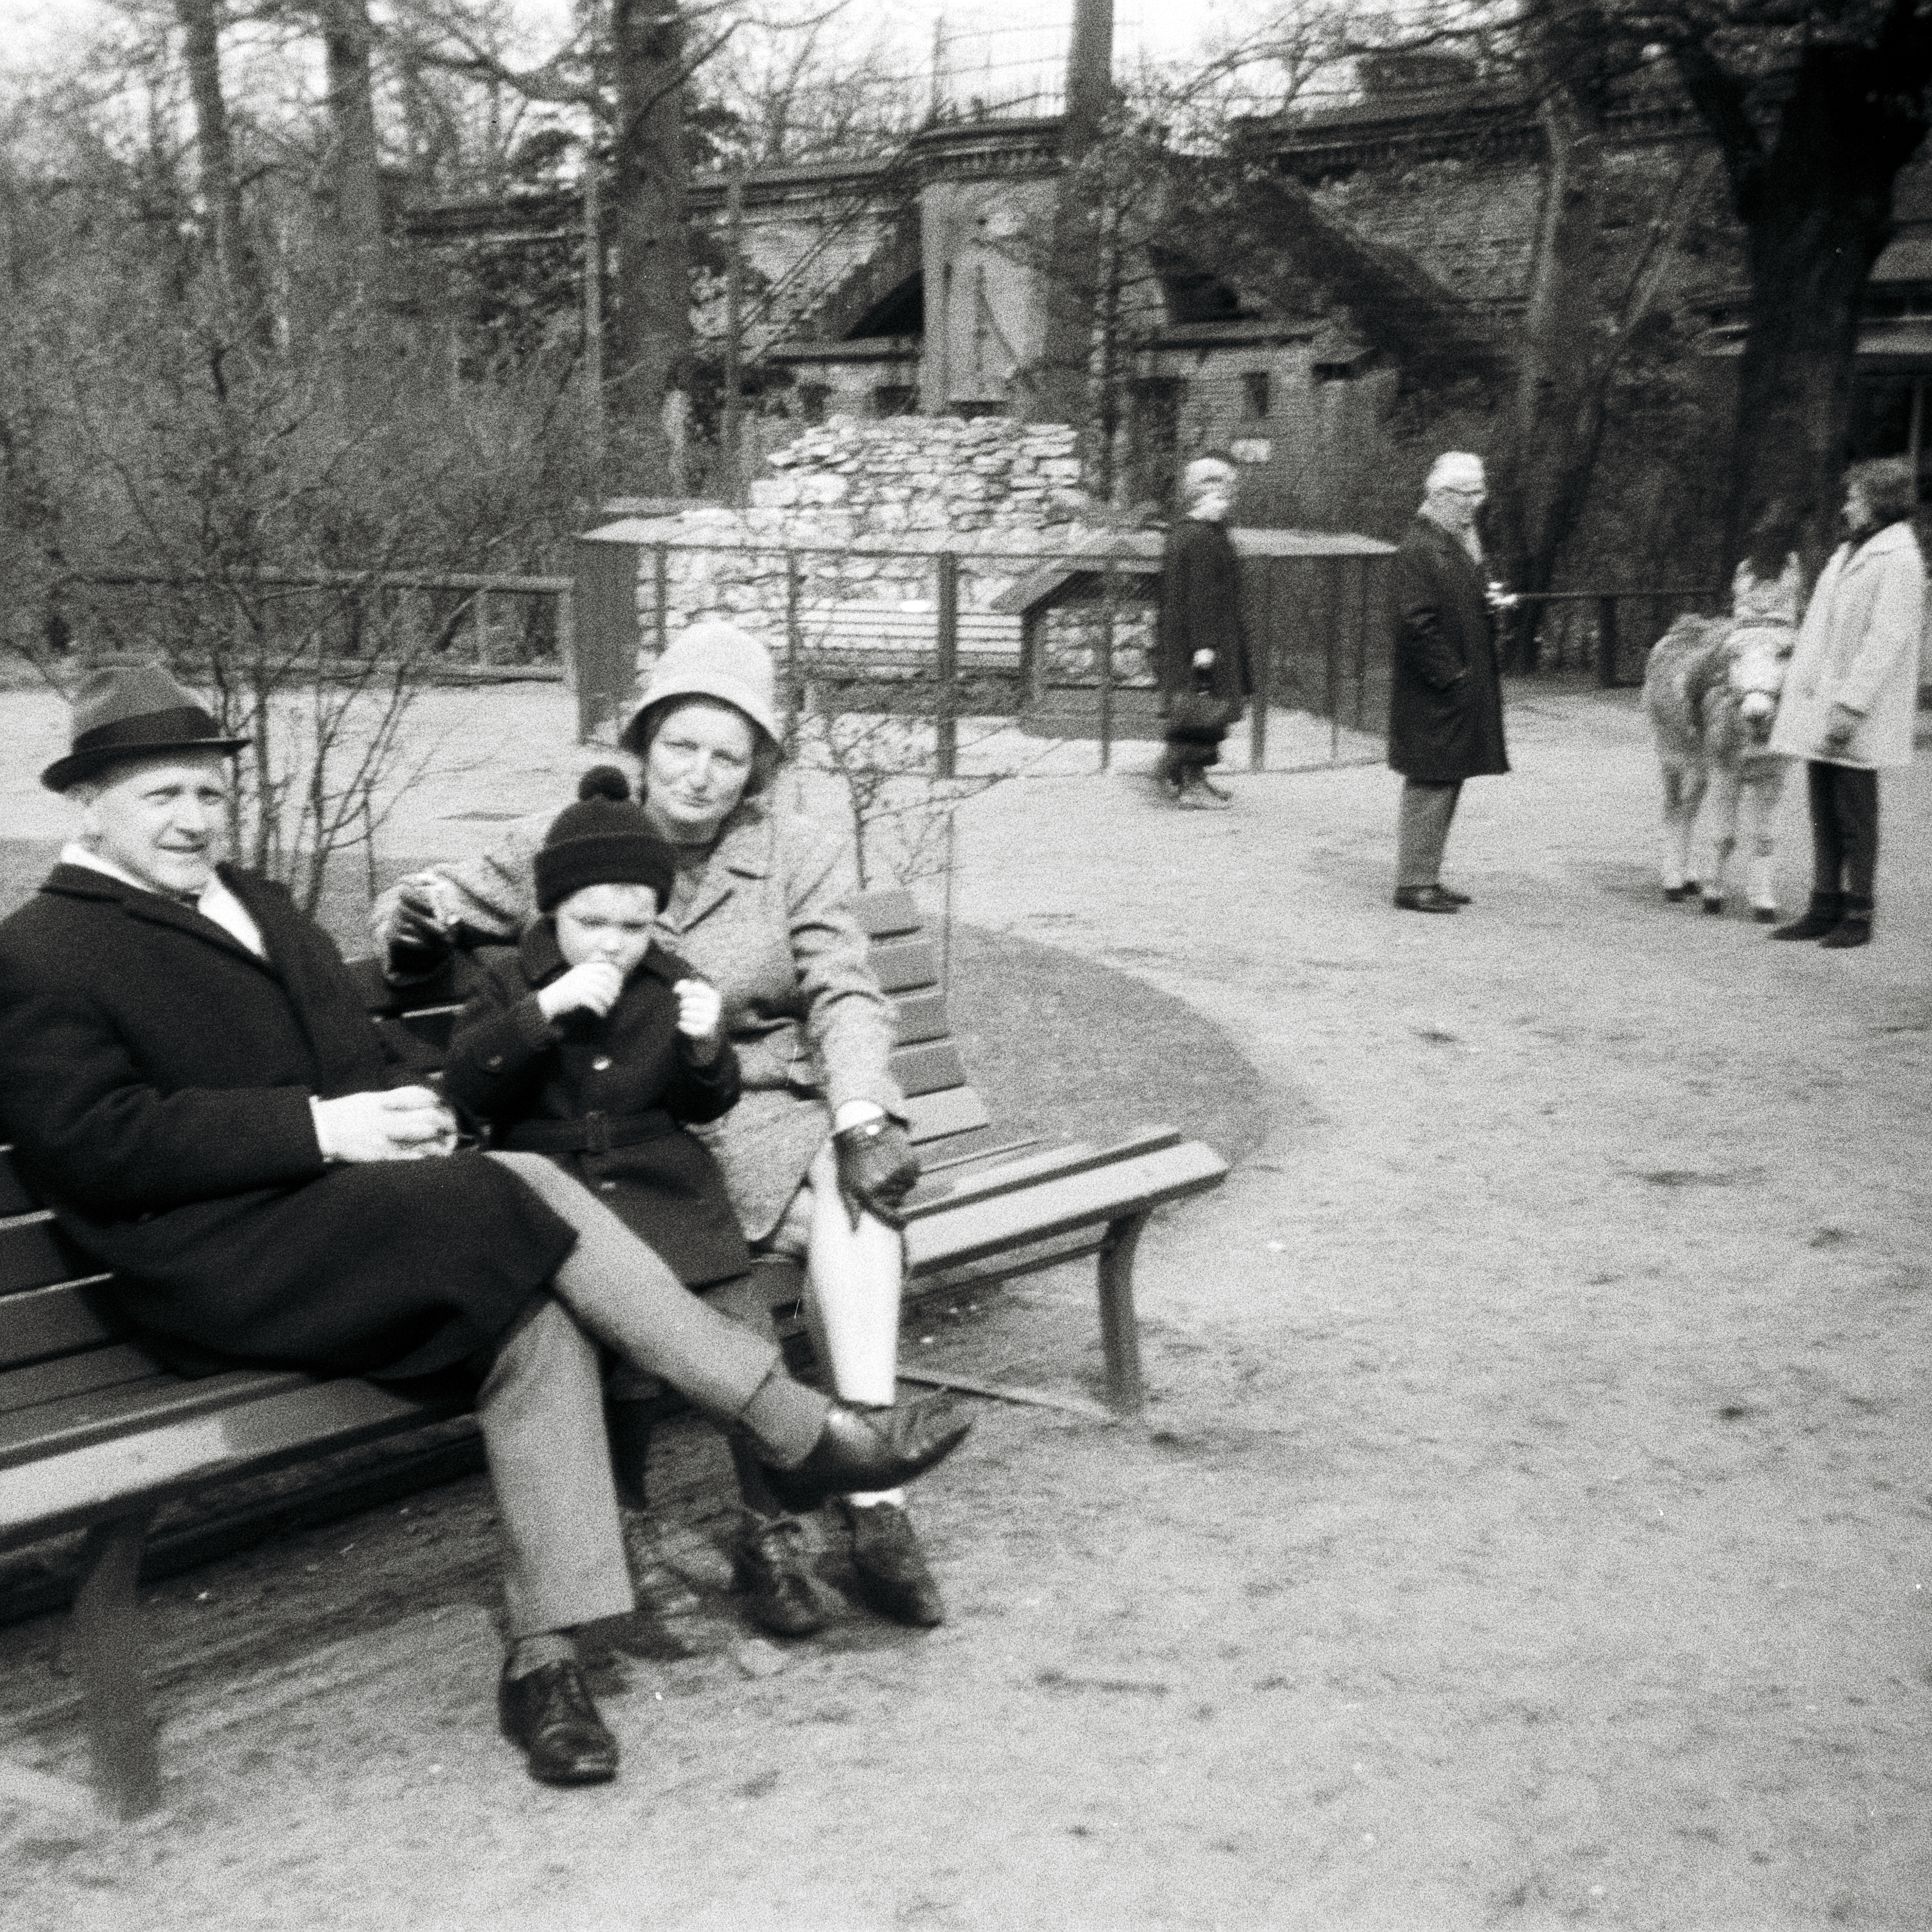 Photo: Drei Berlin-Besucher aus Hildesheim auf einer Sitzbank im Zoo in Berlin(West) im Jahre 1967. Photo: Erwin Thomasius.